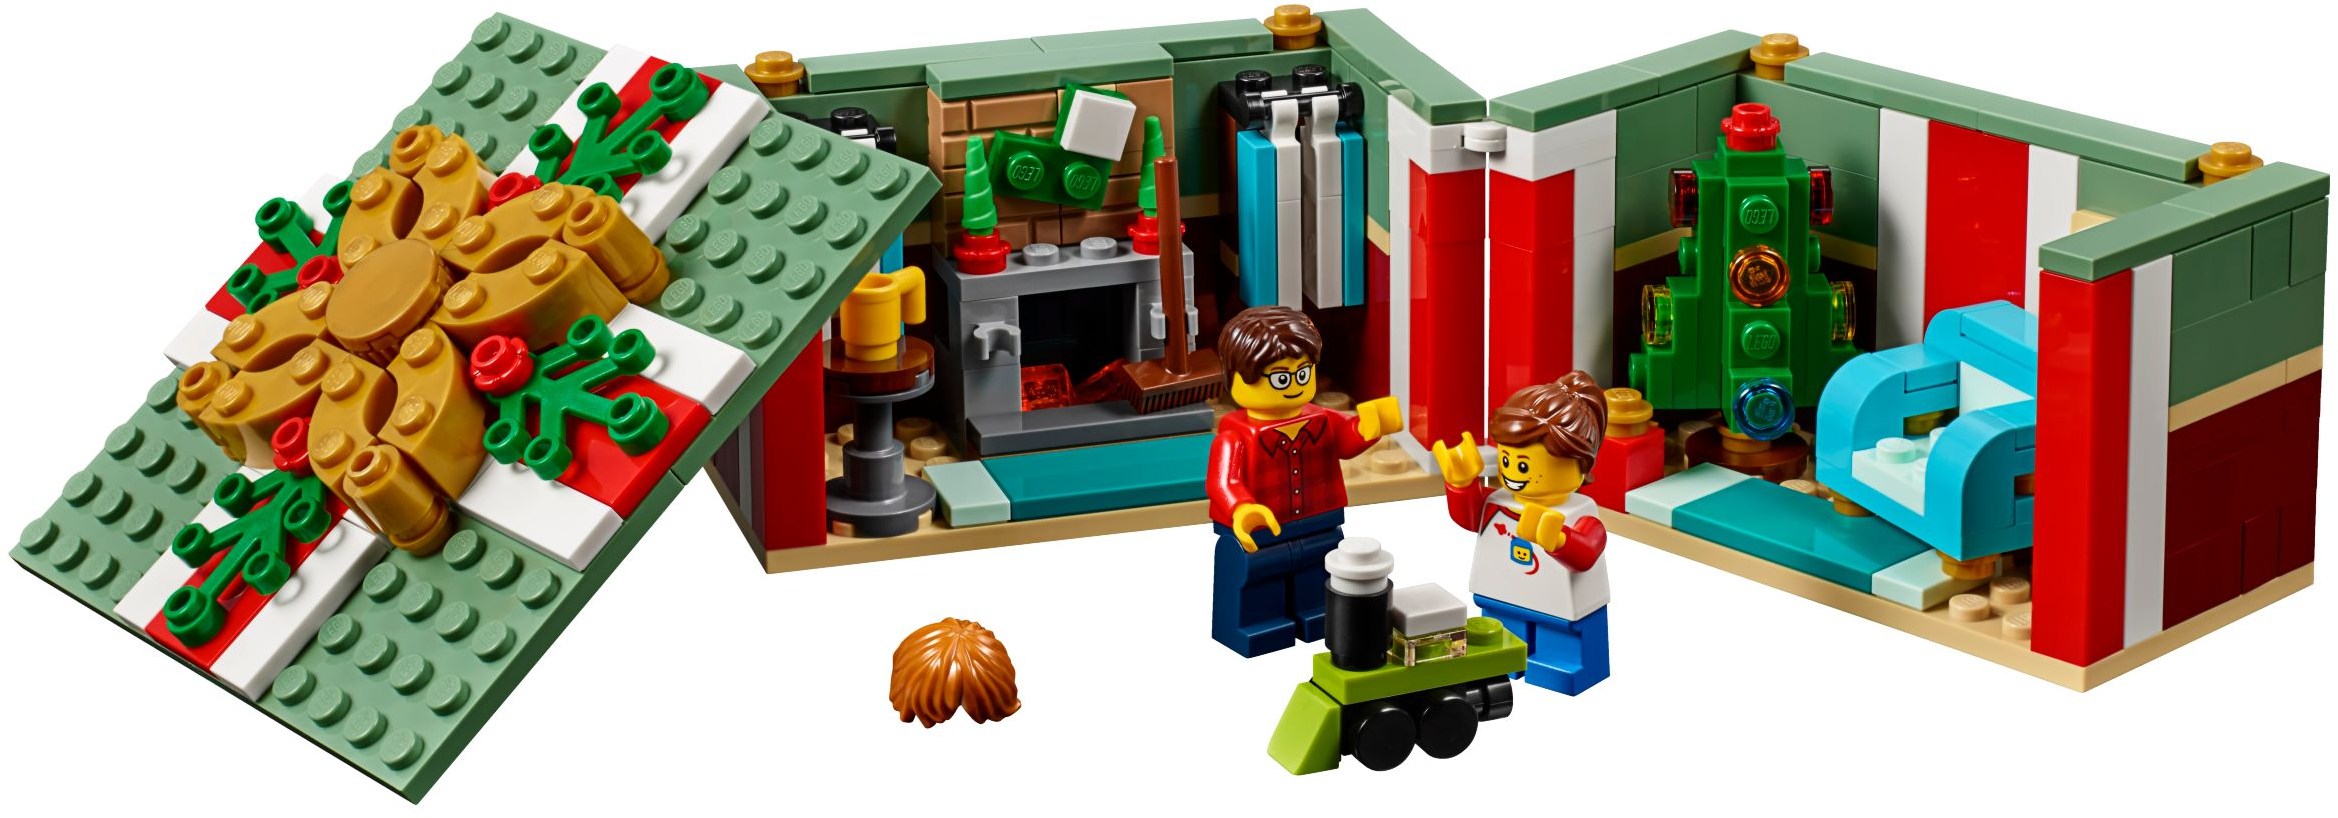 NEW LEGO 40292 Christmas Gift Box Set Factory Sealed 